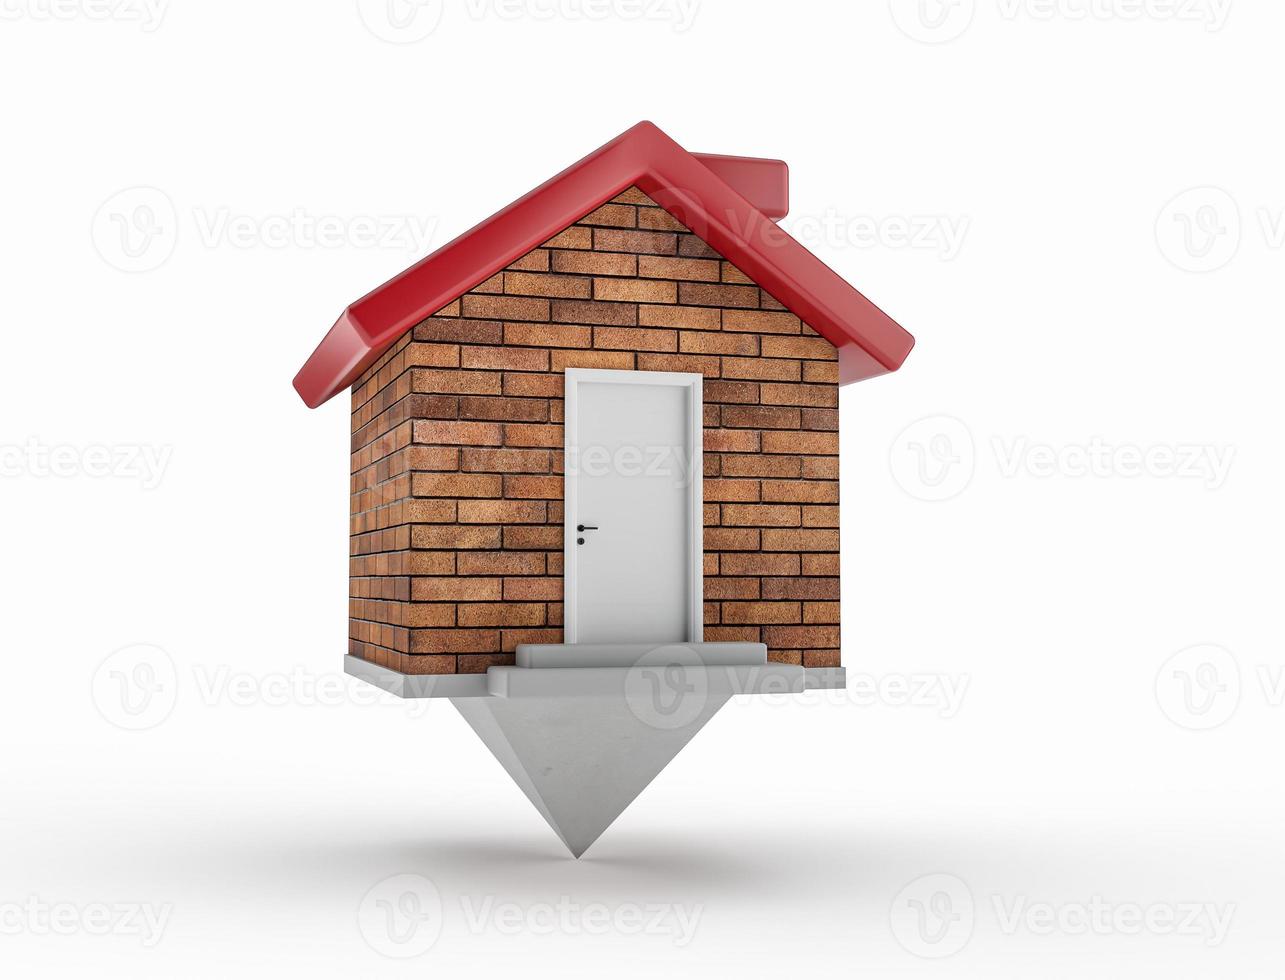 casa puntatore mappa muro di mattoni tetto rosso camino porte bianche grigio gradini 3d illustrazione foto